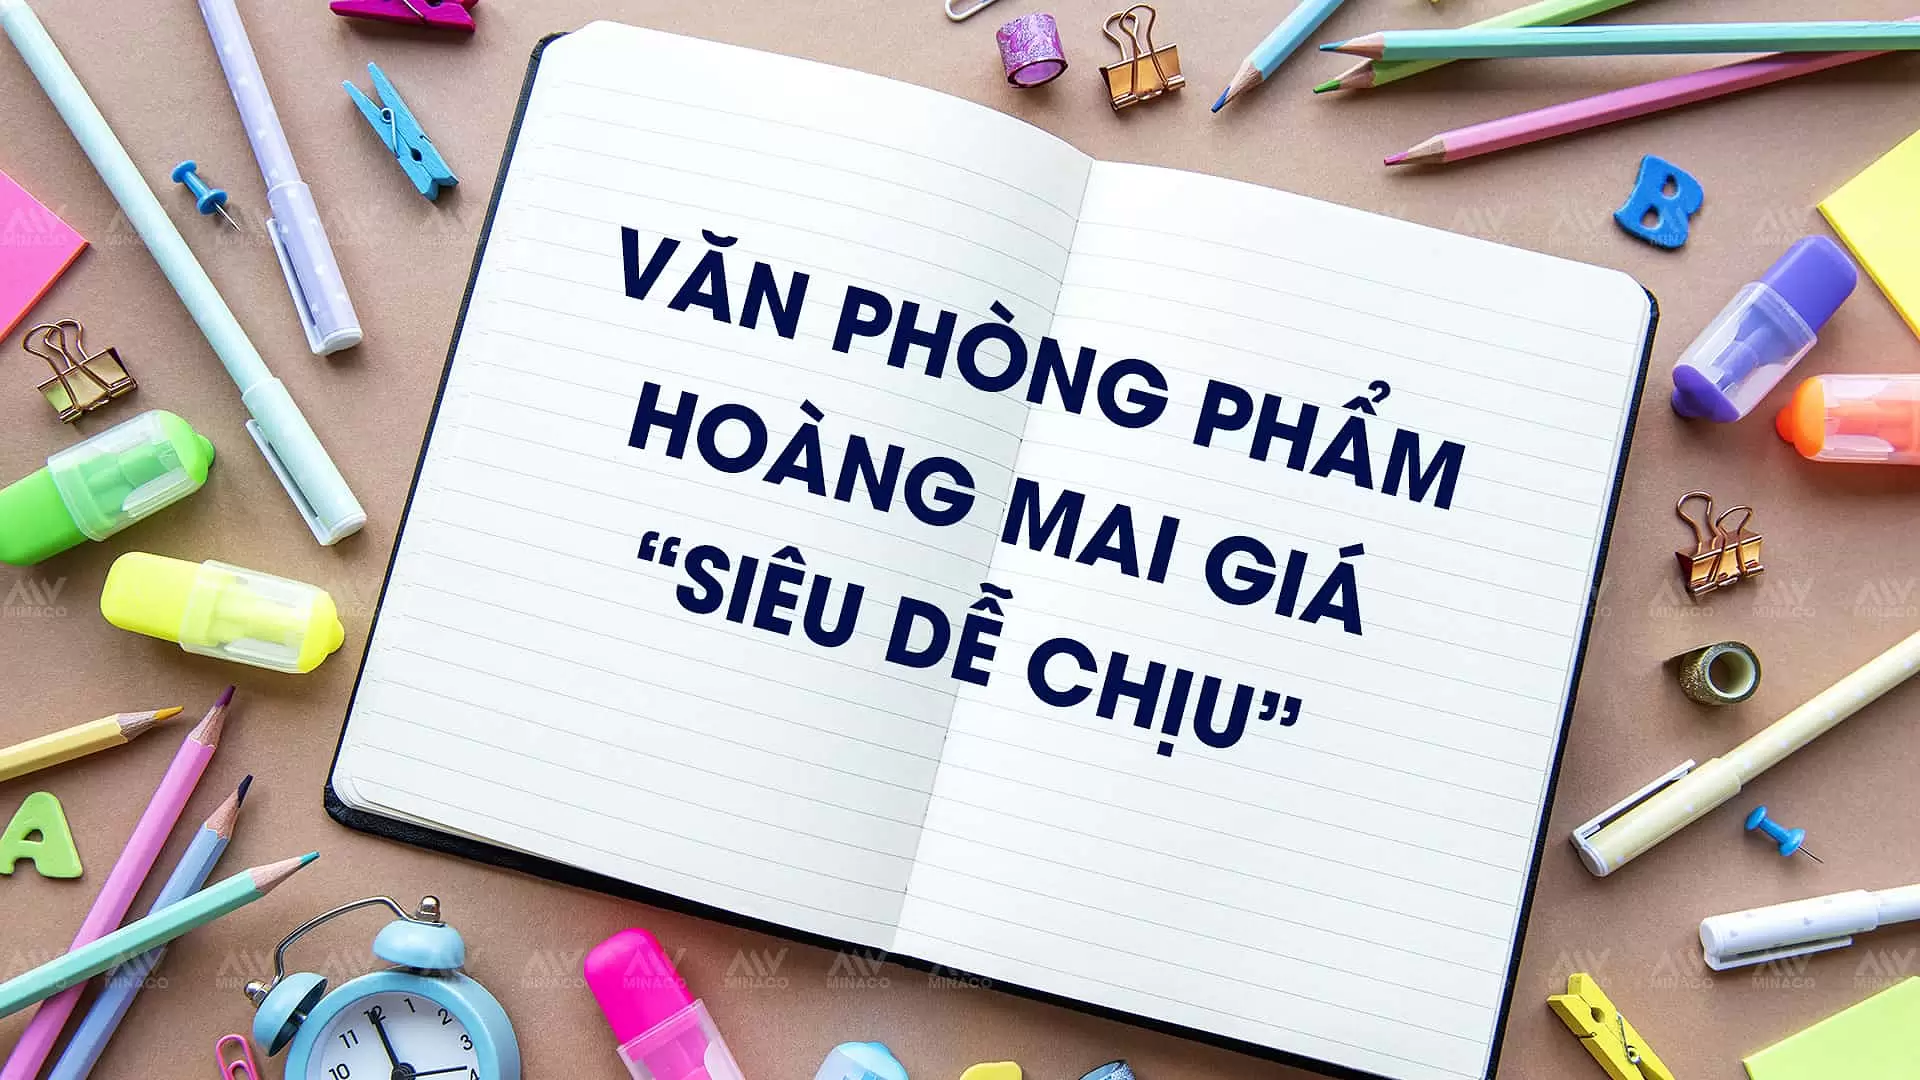 Van Phong Pham Hoang Mai Gia Sieu De Chiu